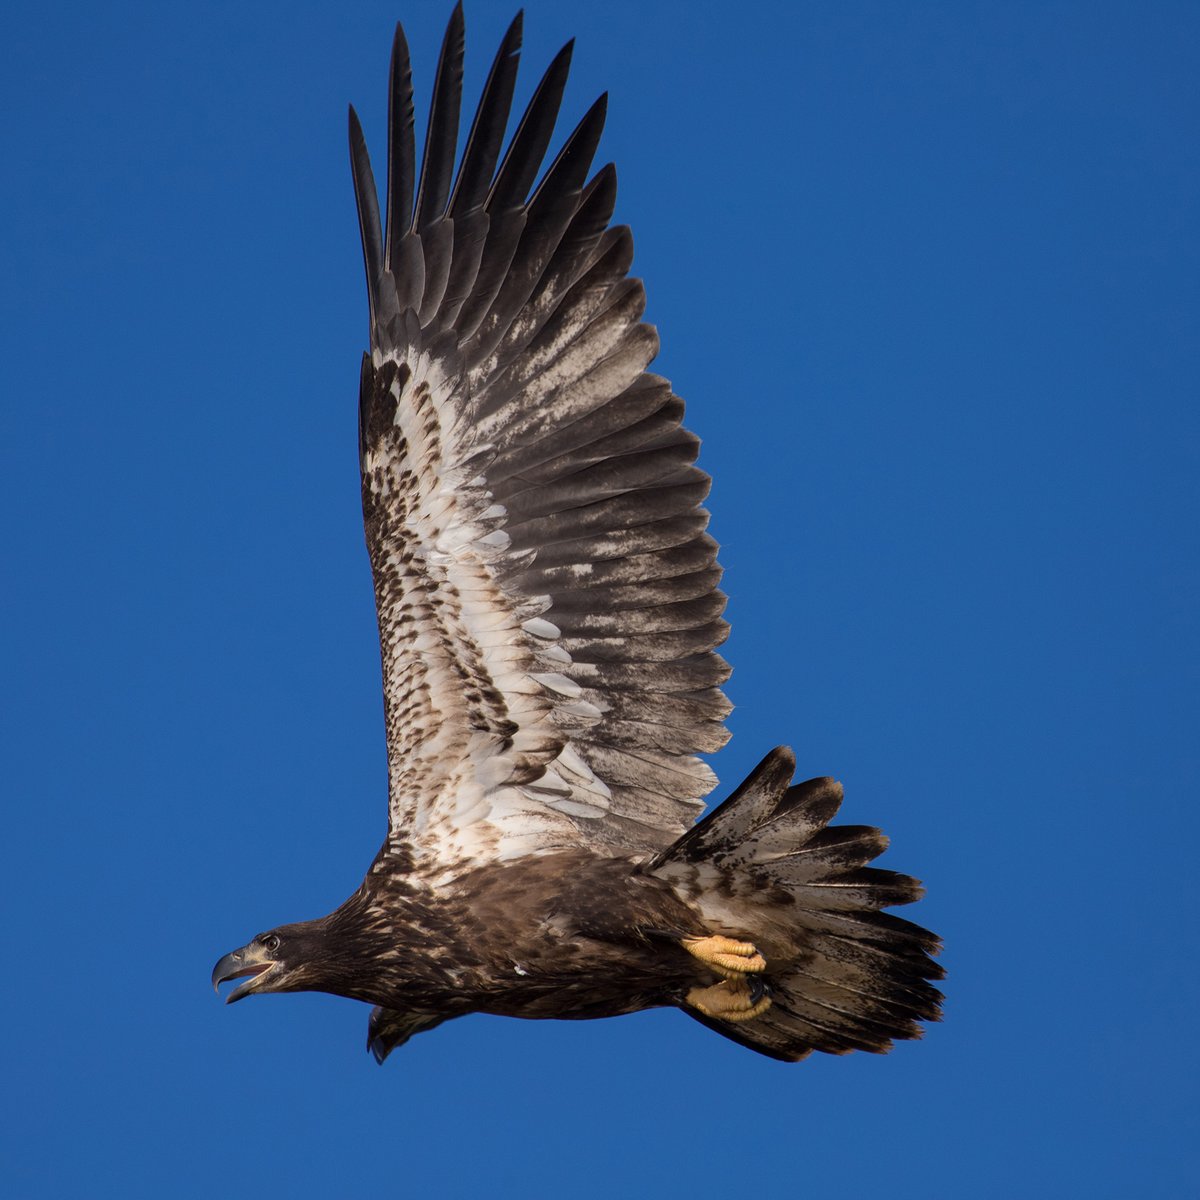 (Photo by Al Kearney)
#BaldEagle #BirdTwitter